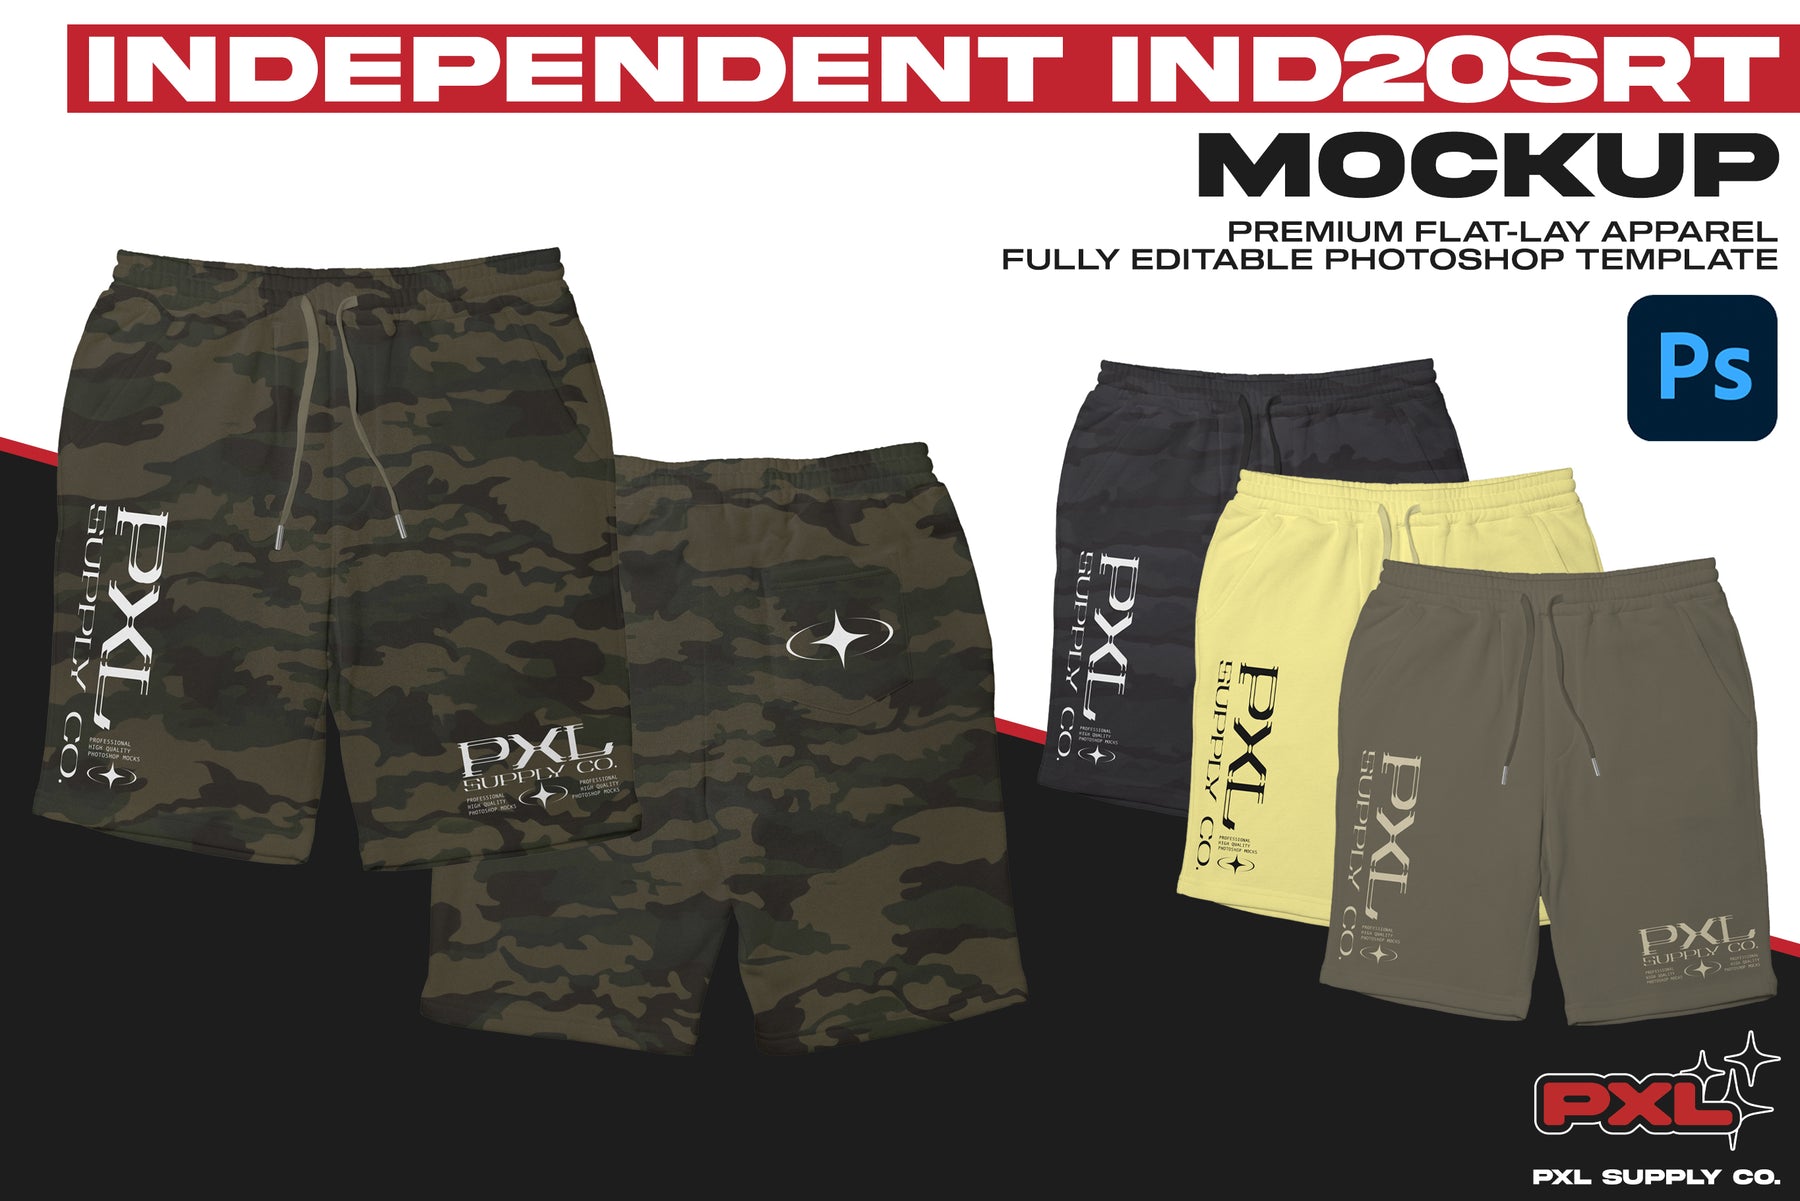 Independent IND20SRT Shorts Mockup